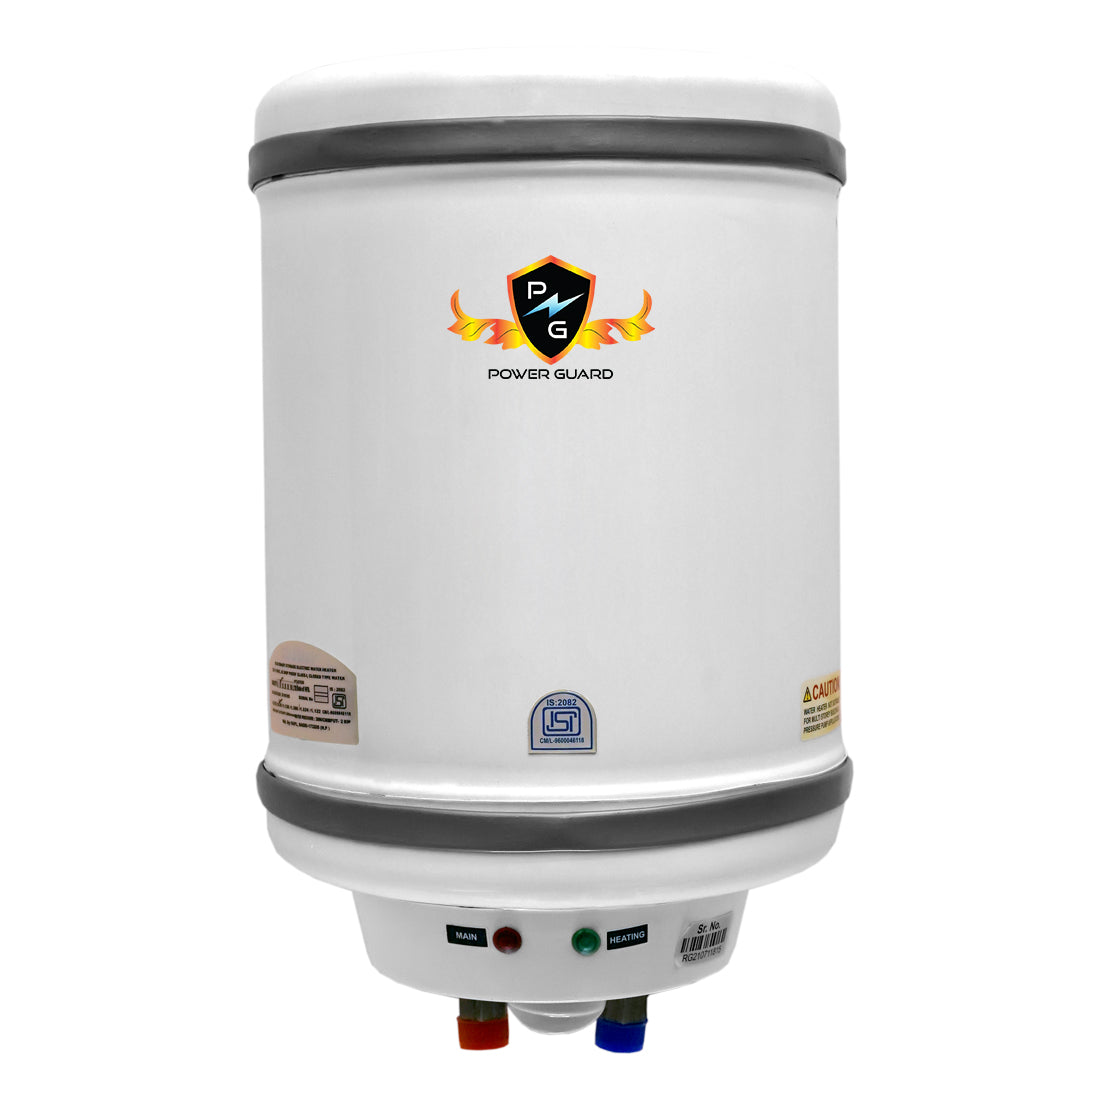 Water Geyser : Power Guard 6L Storage Water Heater Geyser (White, PG-METAL-6)